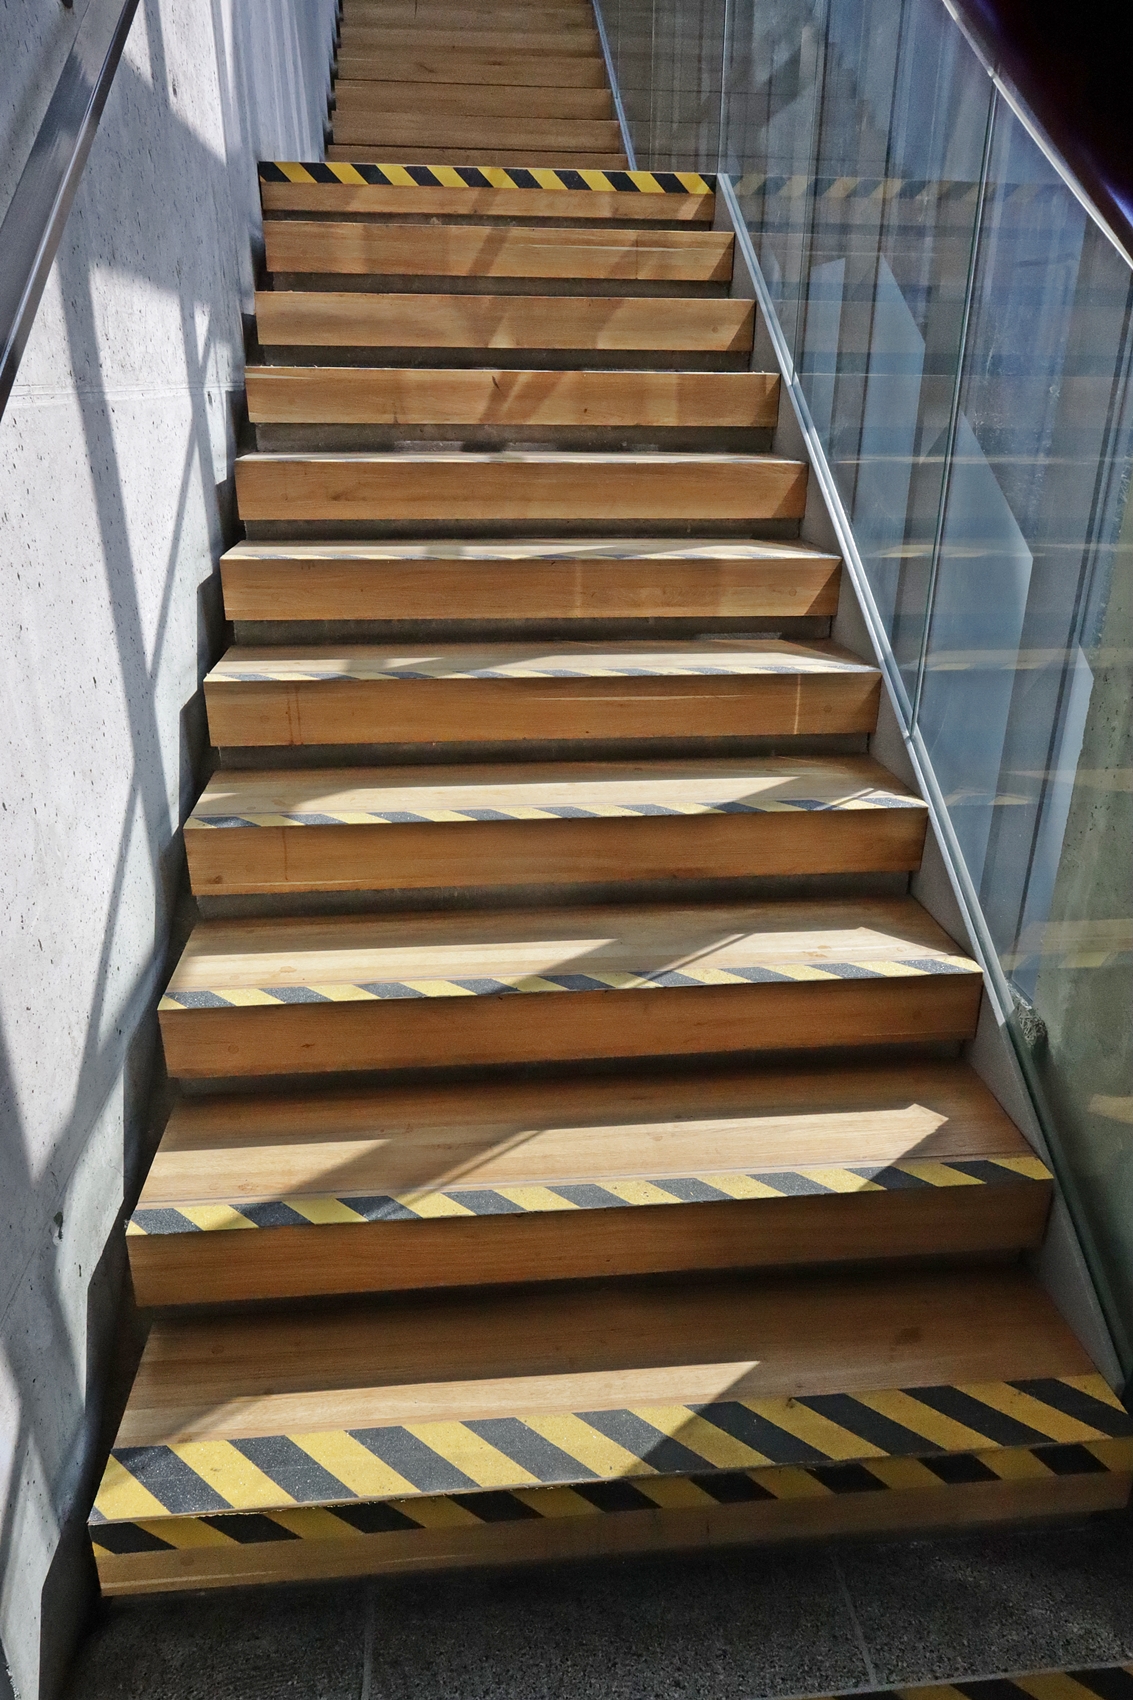 Na zdjęciu widzimy drewniane schody wykonane z jasnego drewna, które prowadzą na piętro w Zarządzie Dróg Wojewódzkich w Lublinie. Jest ich łącznie 16 i przedzielone są miejscem spoczynkowym po przejściu 8 schodków. Po lewej stronie znajduje się poręcz umiejscowiona na wysokości 90 cm i 115 centymetrów.